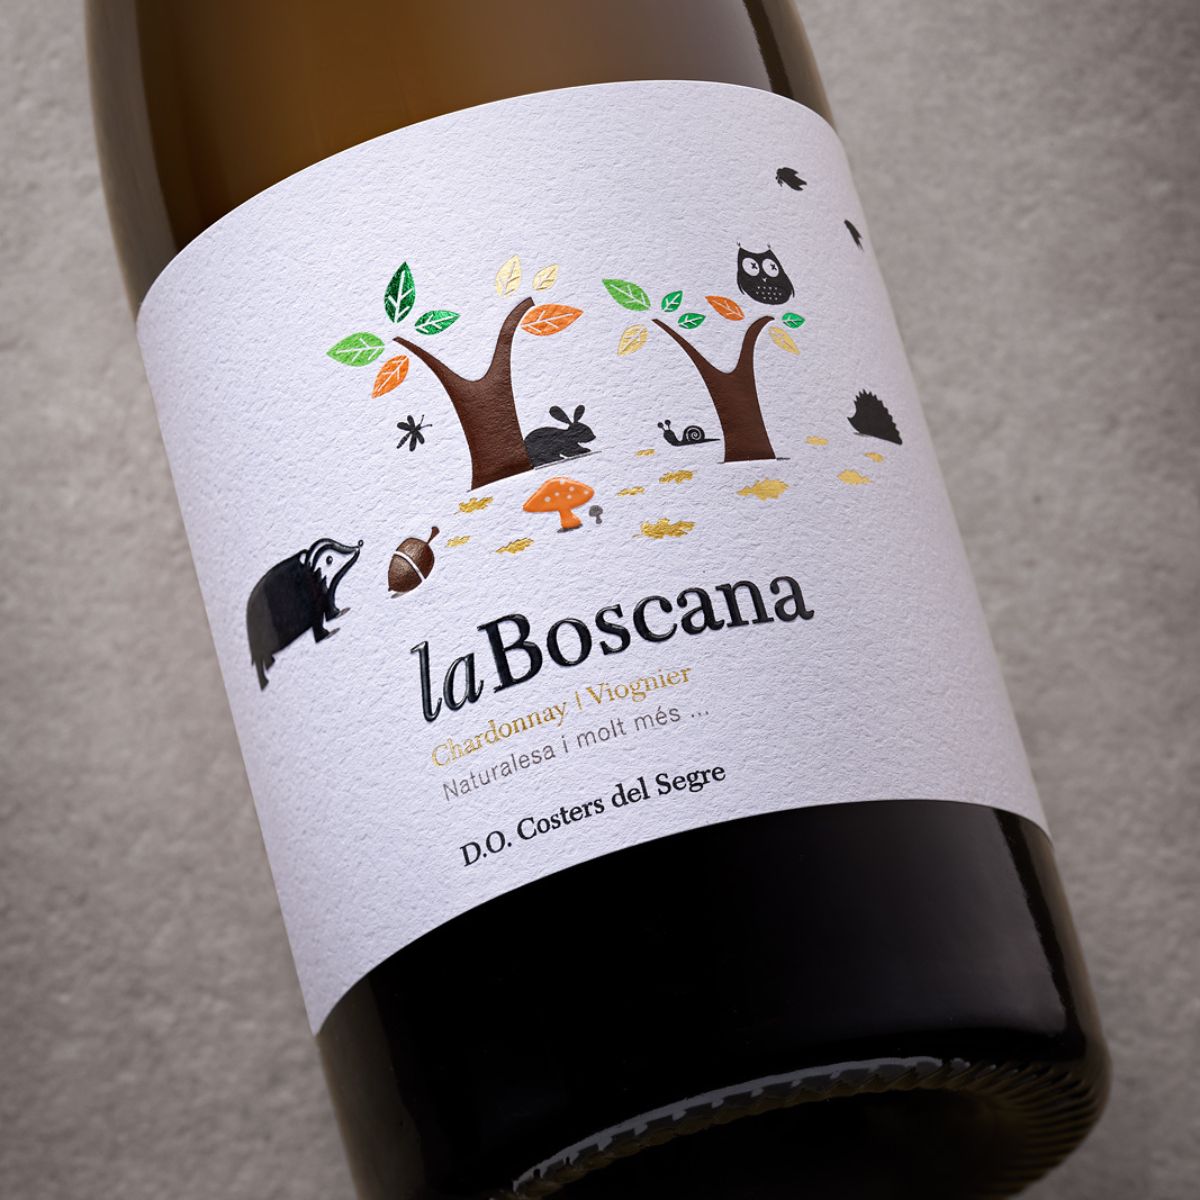 Vino blanco La Boscana etiqueta | Bodegas Costers del Sió | D.O. Costers del Segre